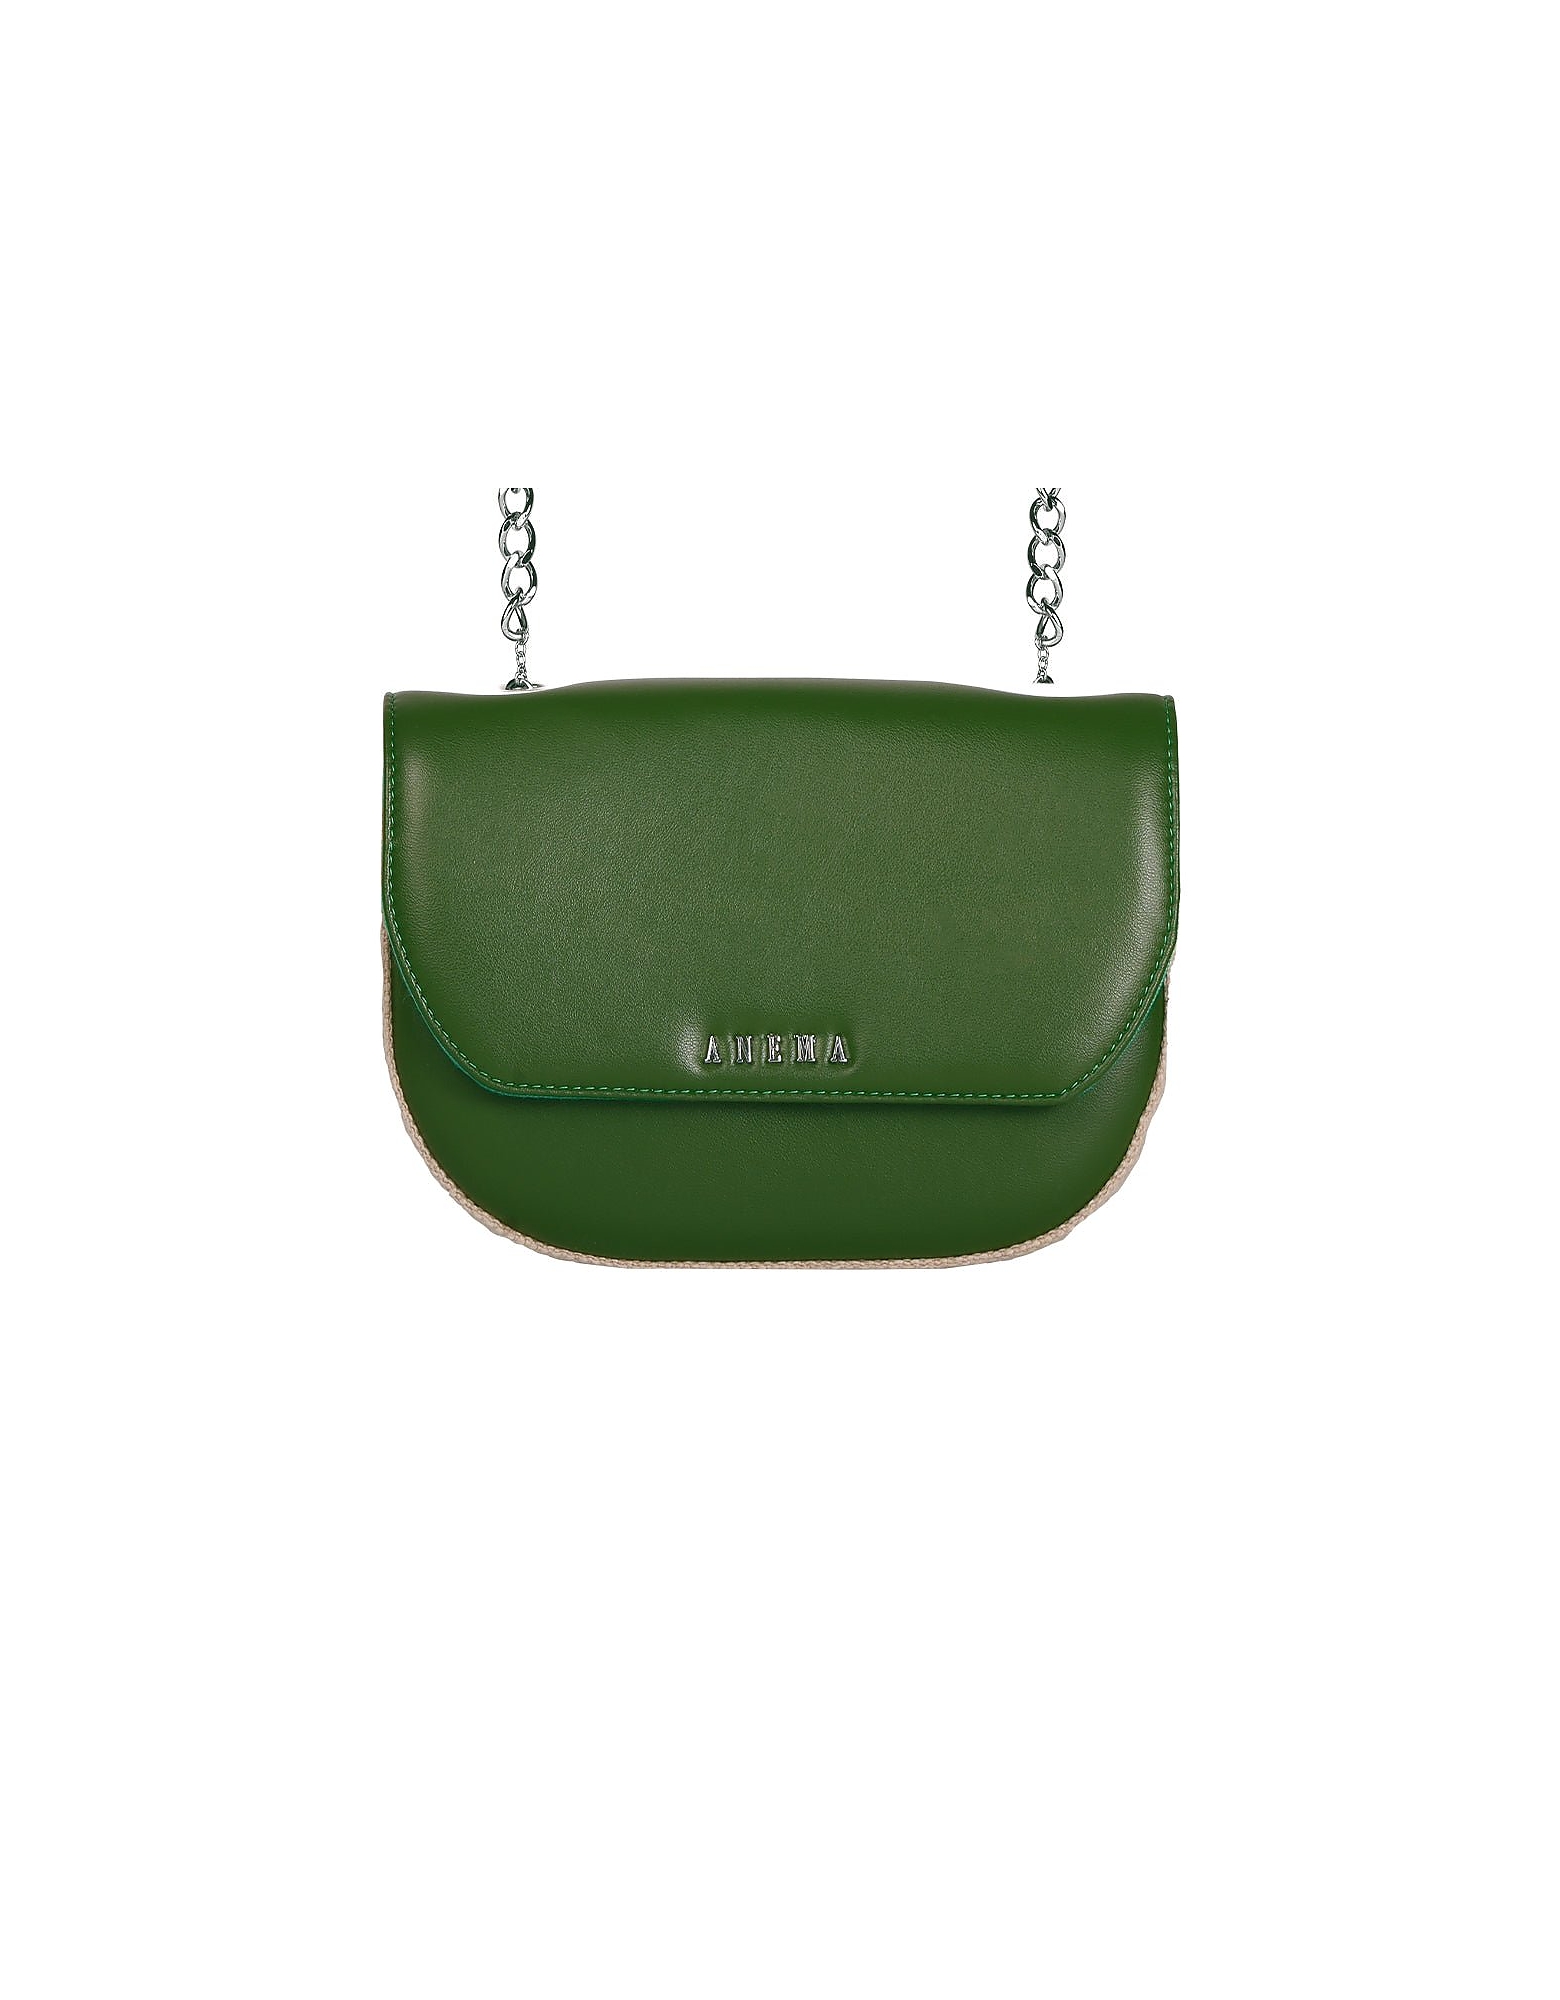 Anema Designer Handbags Regina Capri Anm - Nopal Cactus Leather Crossbody Bag In Vert